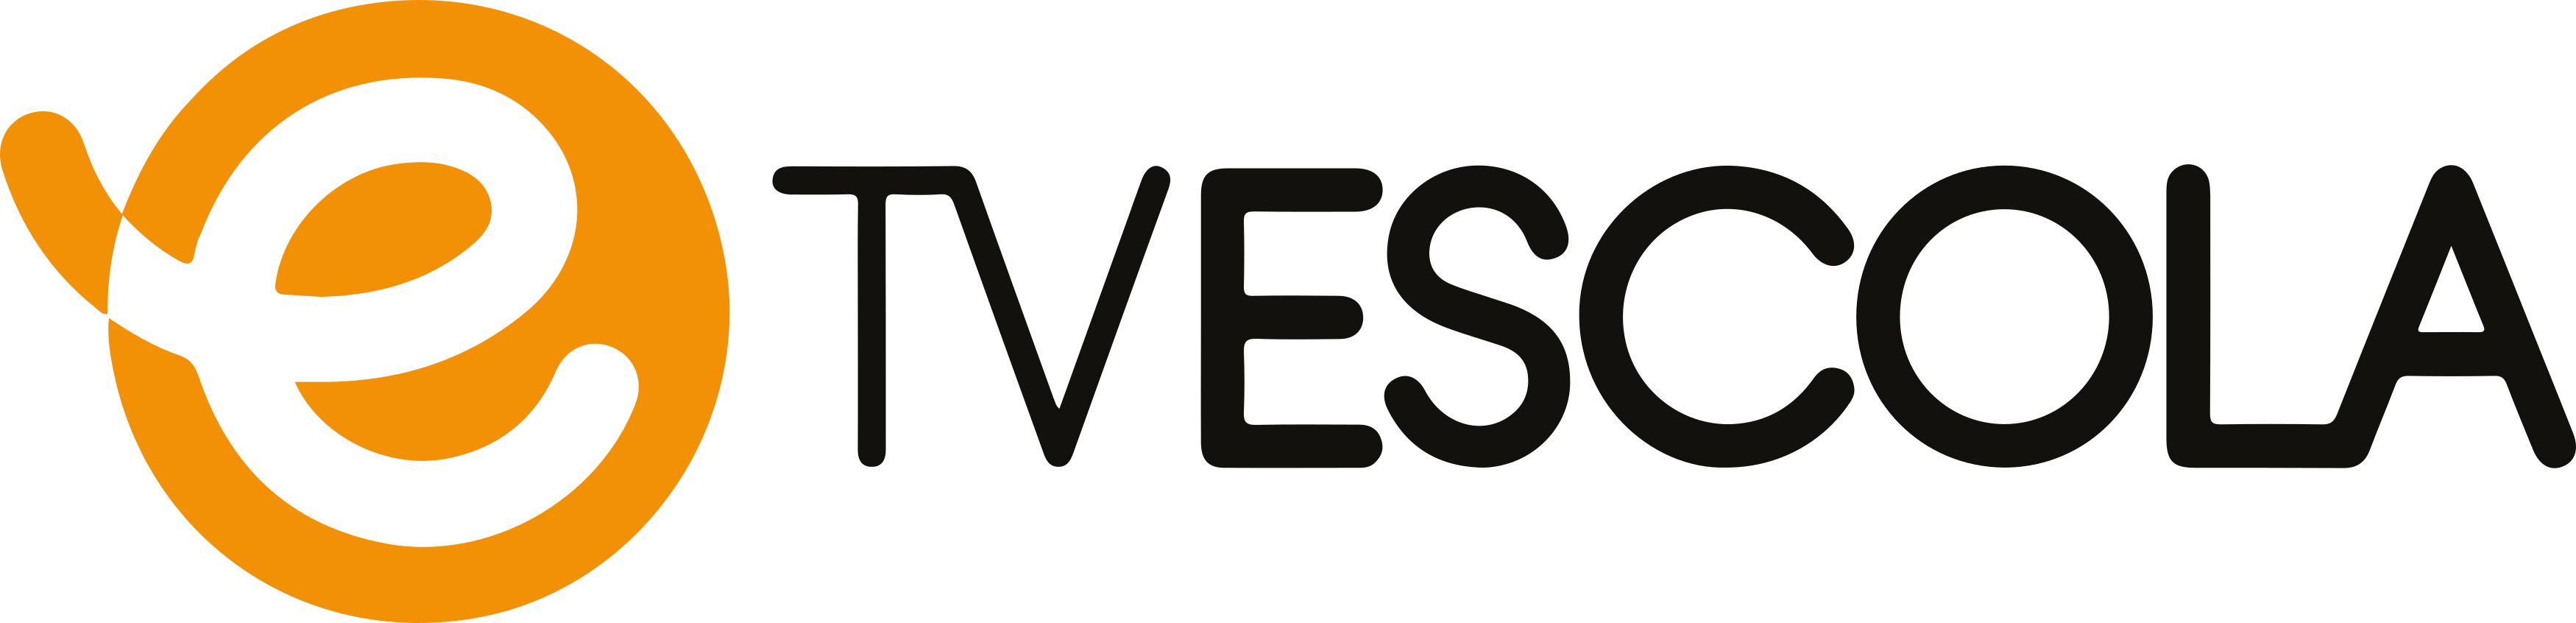 Tv Escola Logo.